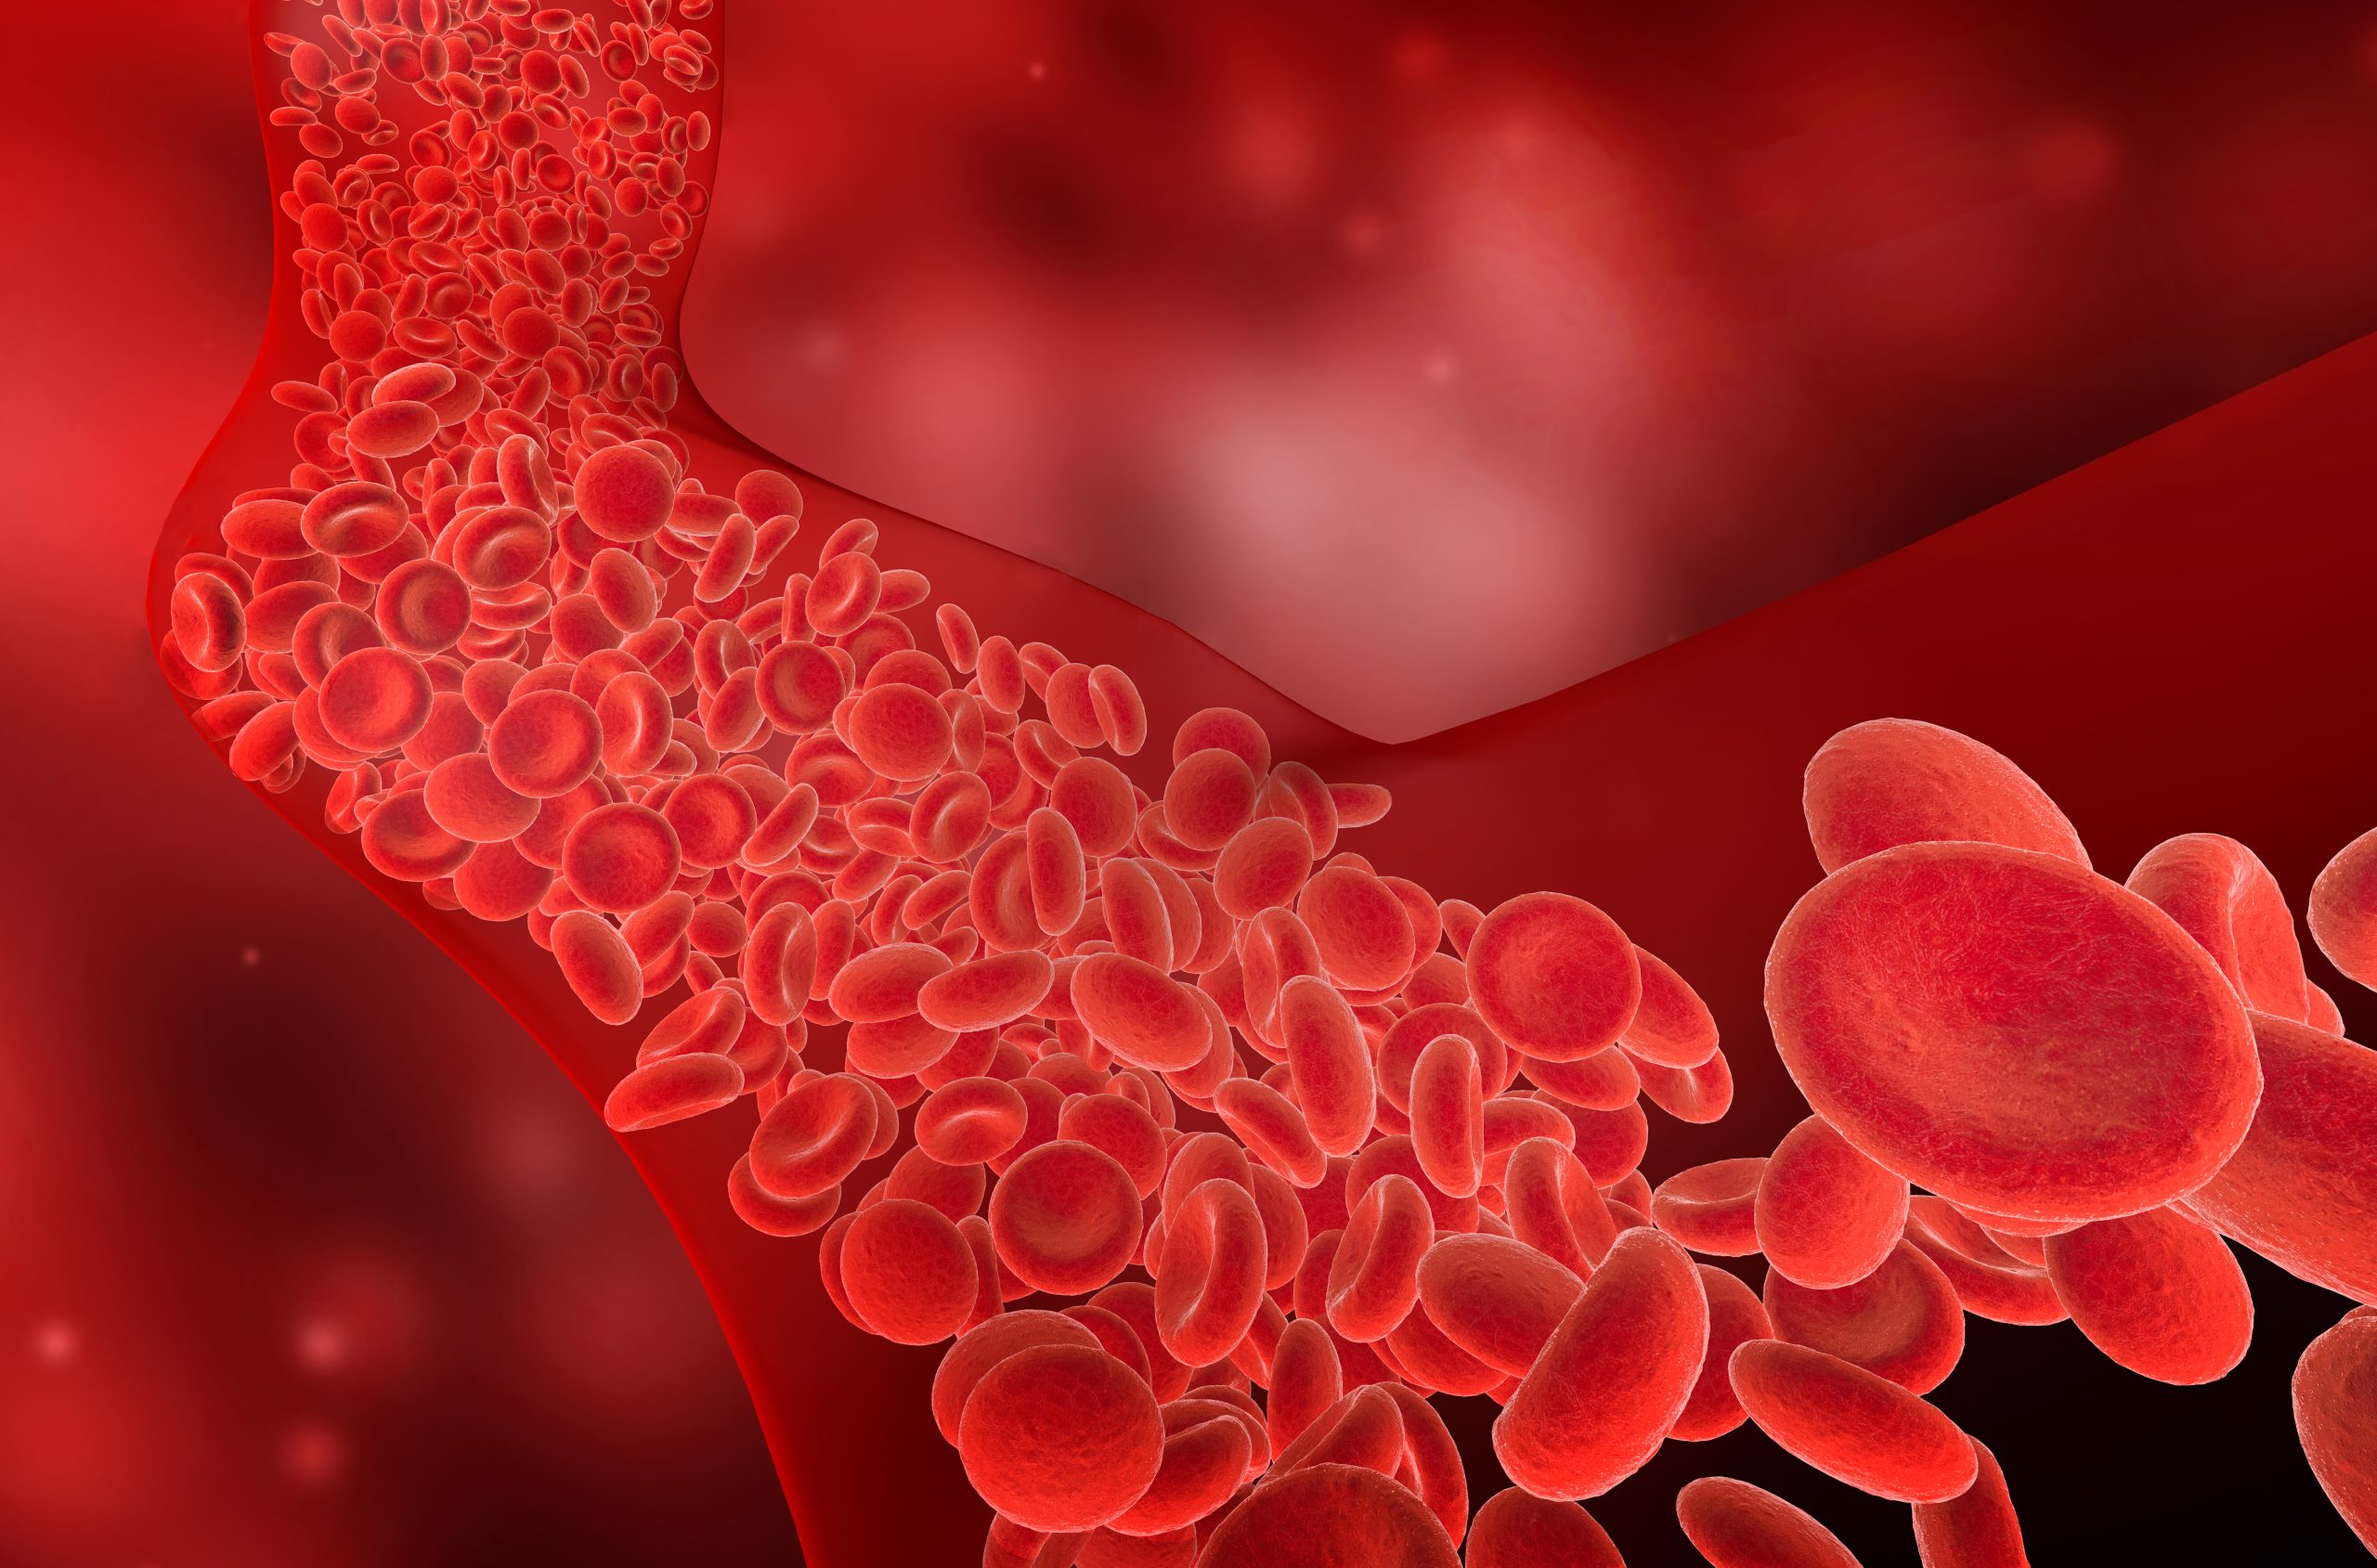 Trombosis venosa profunda y ACV: Riesgos de coágulos sanguíneos